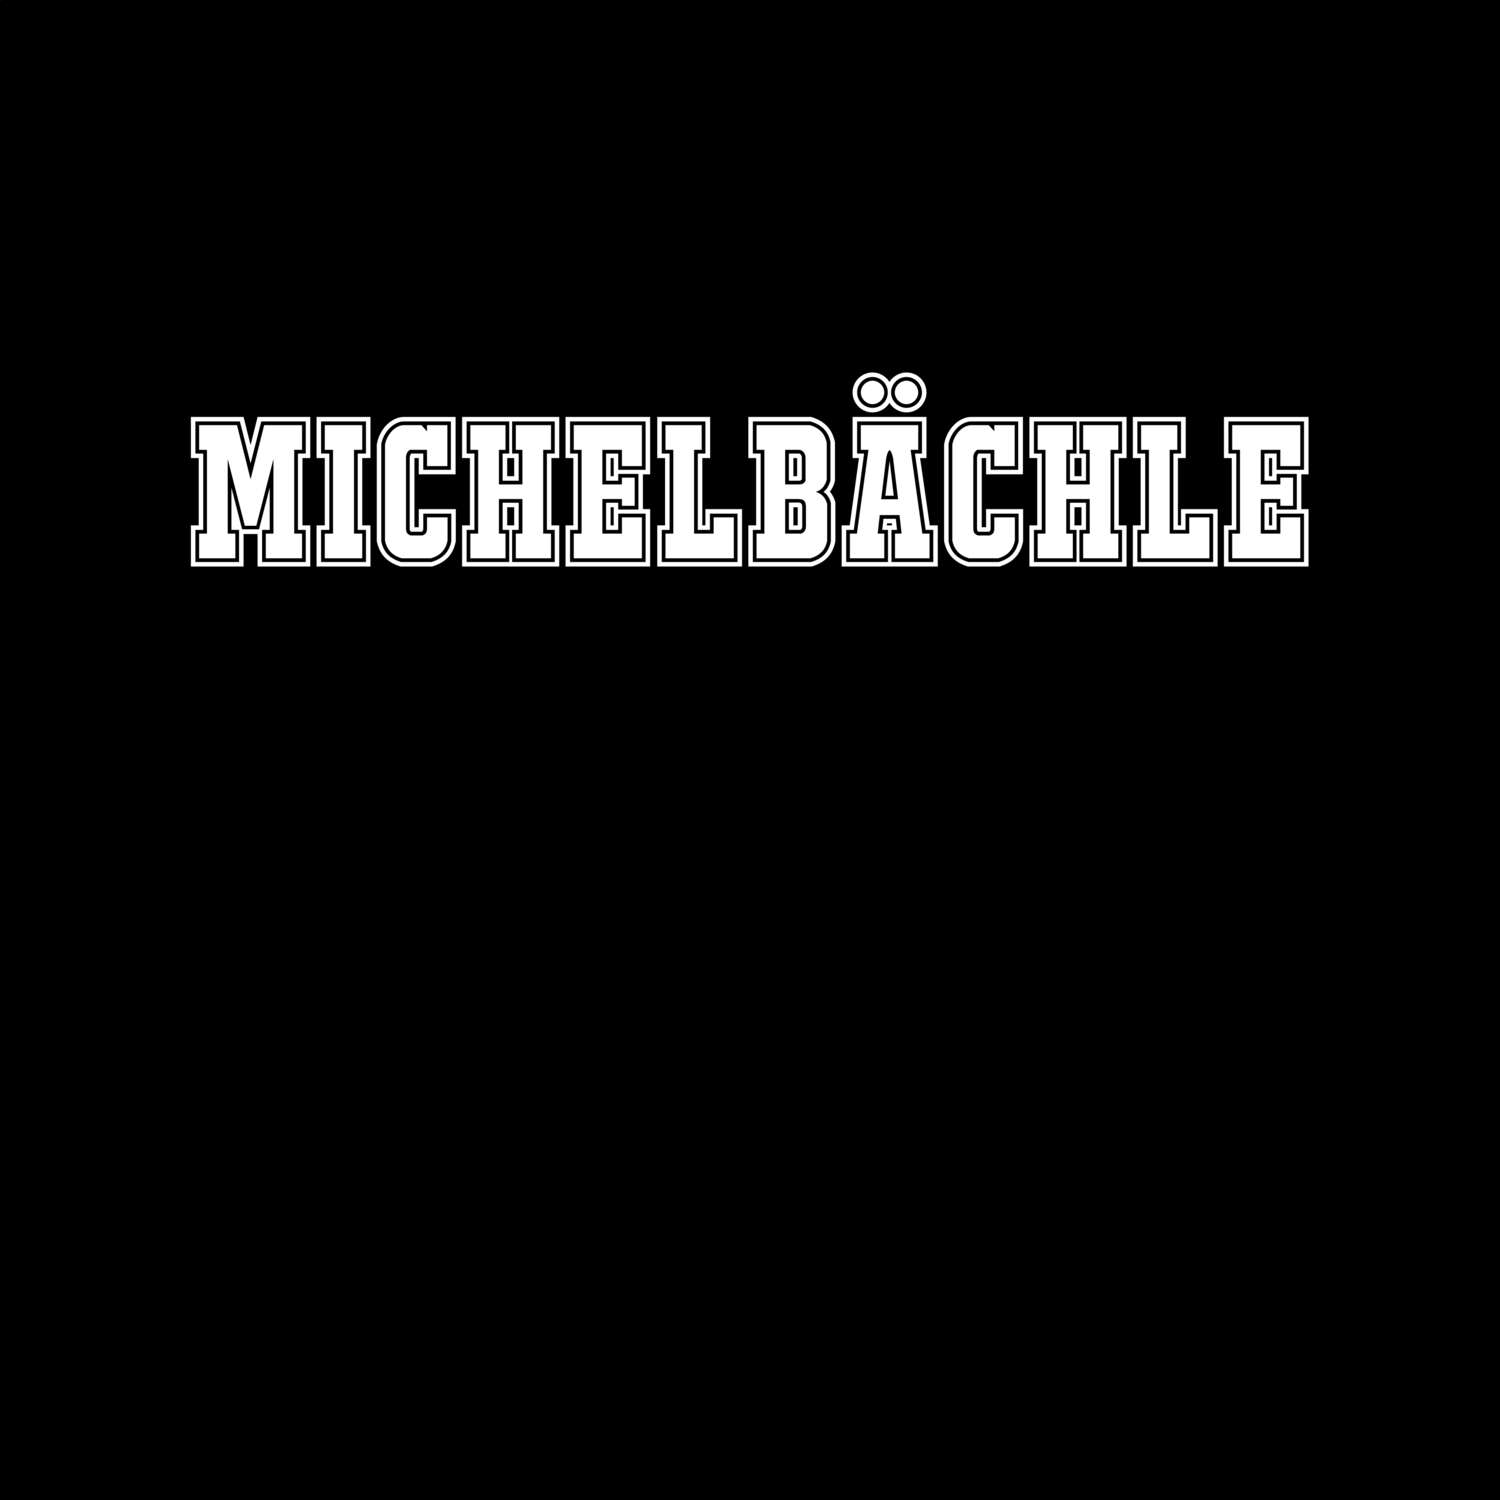 Michelbächle T-Shirt »Classic«